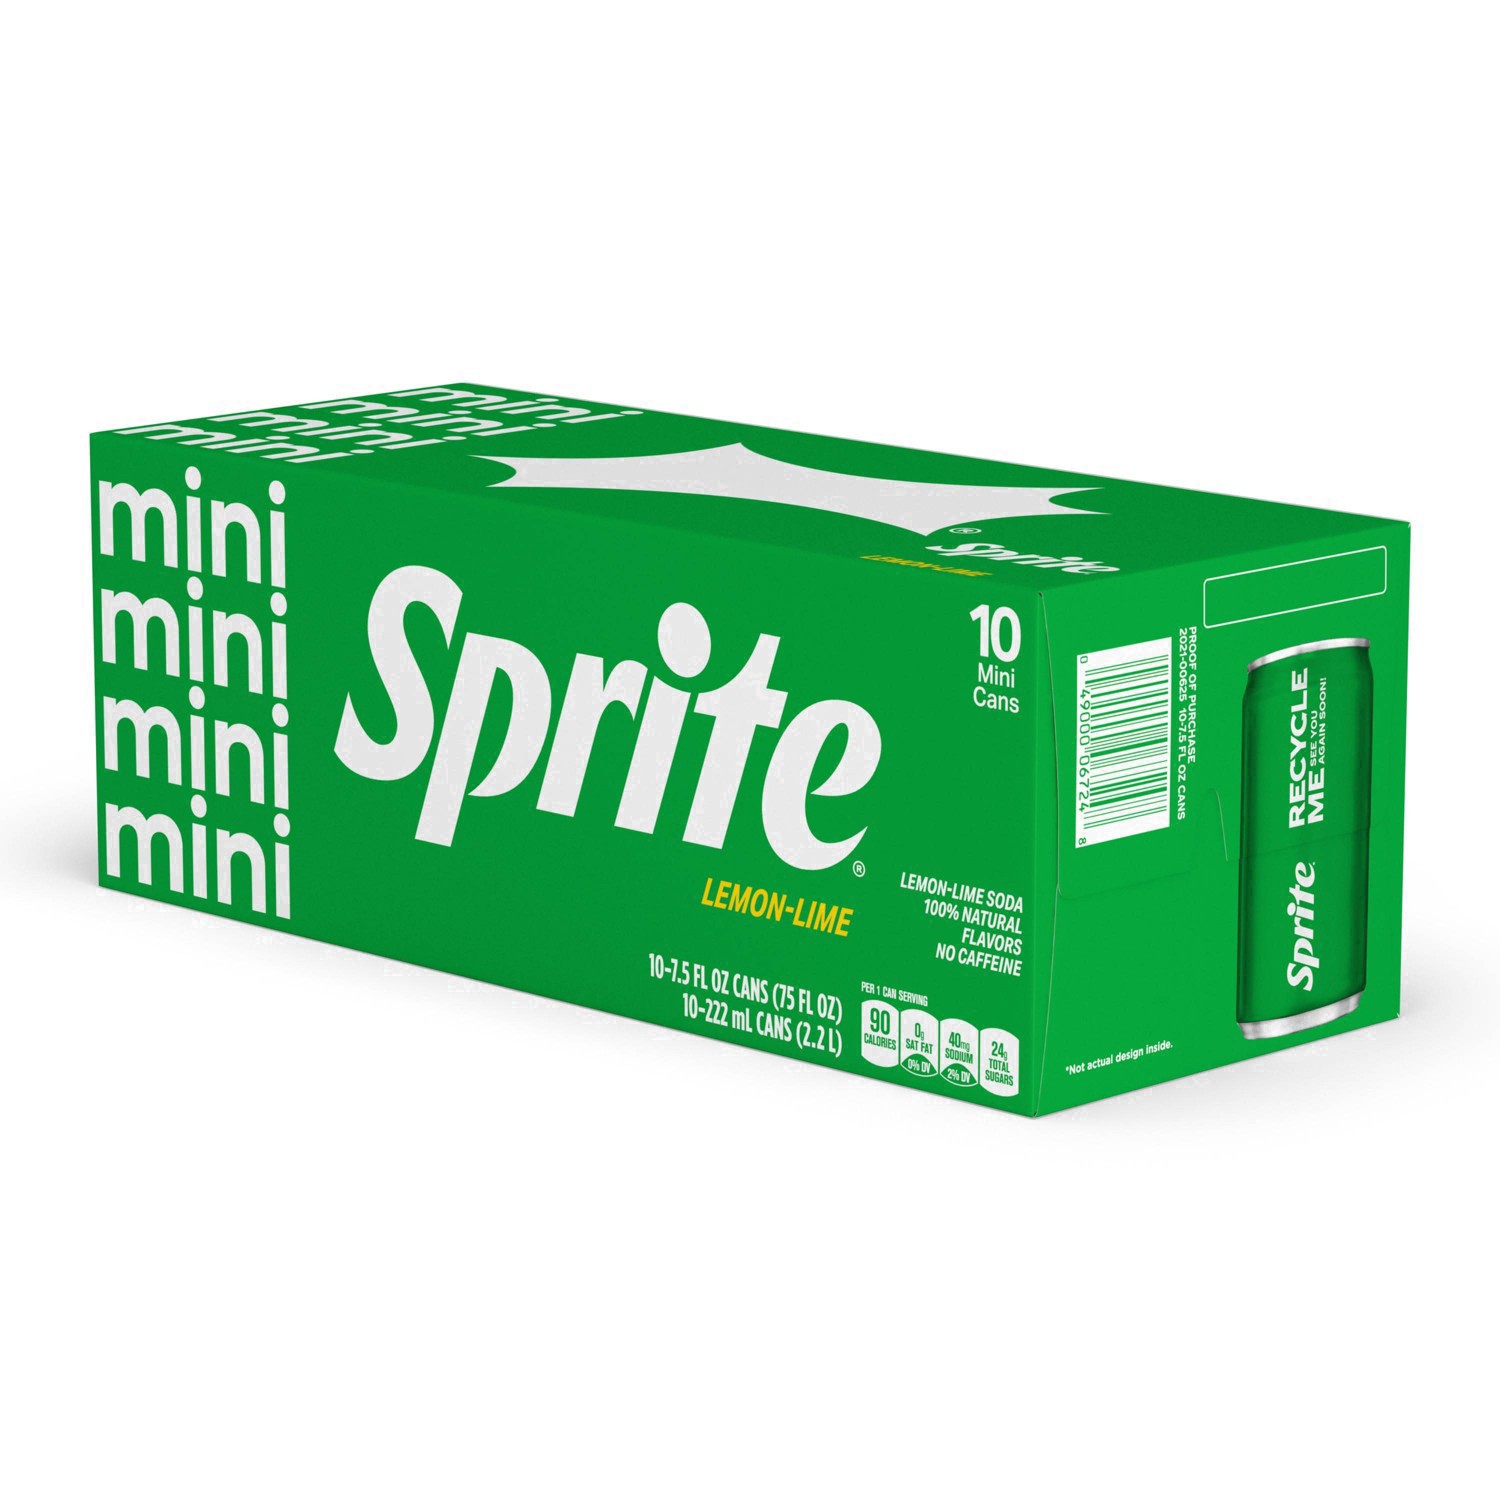 slide 6 of 91, Sprite Lemon Lime Soda Soft Drinks, 7.5 fl oz, 10 Pack, 